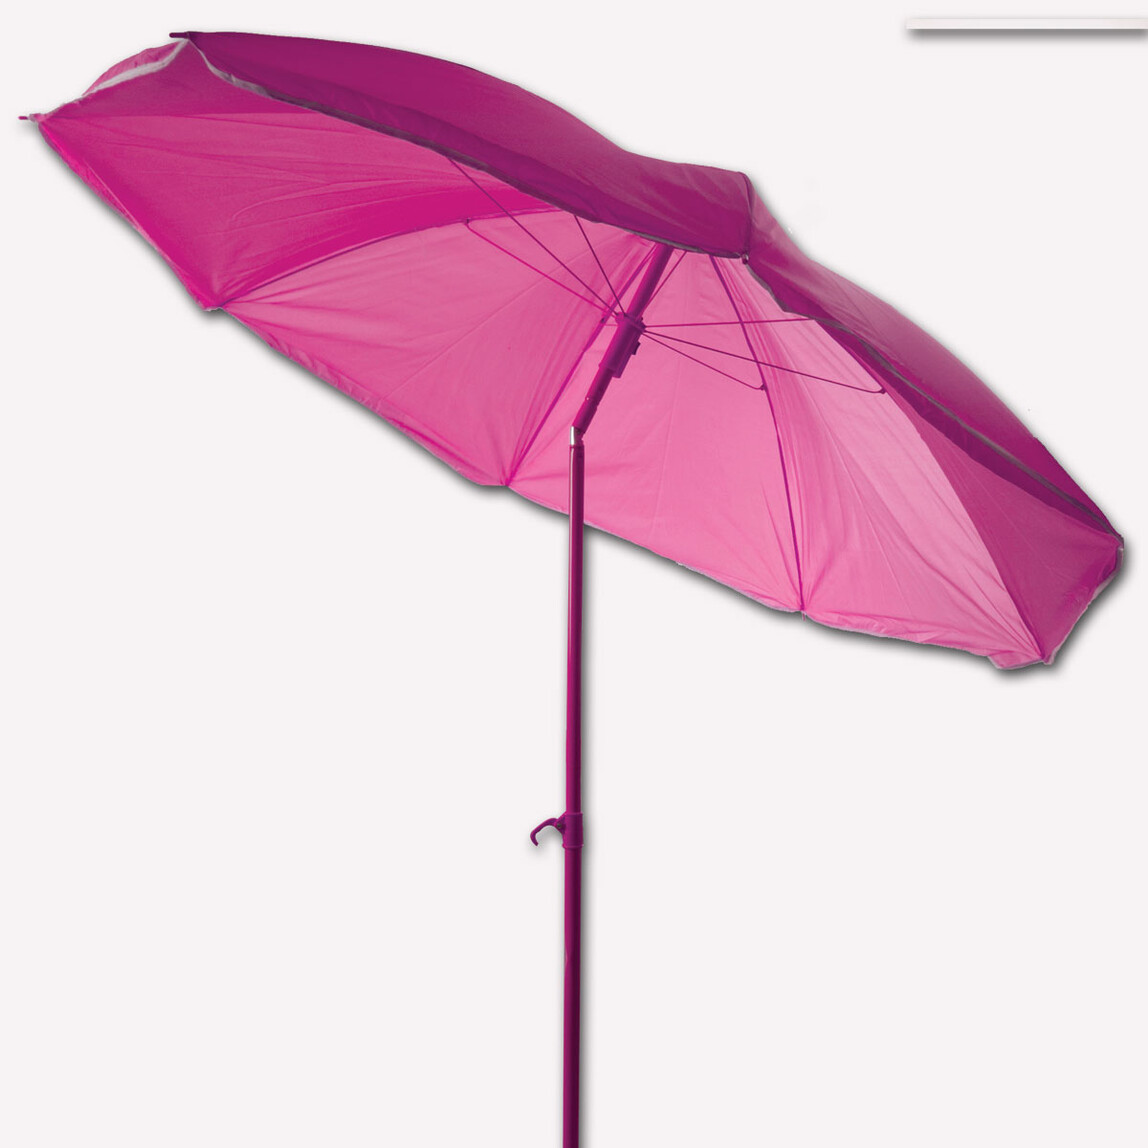    Sunfun Şemsiye Pembe 180 cm  